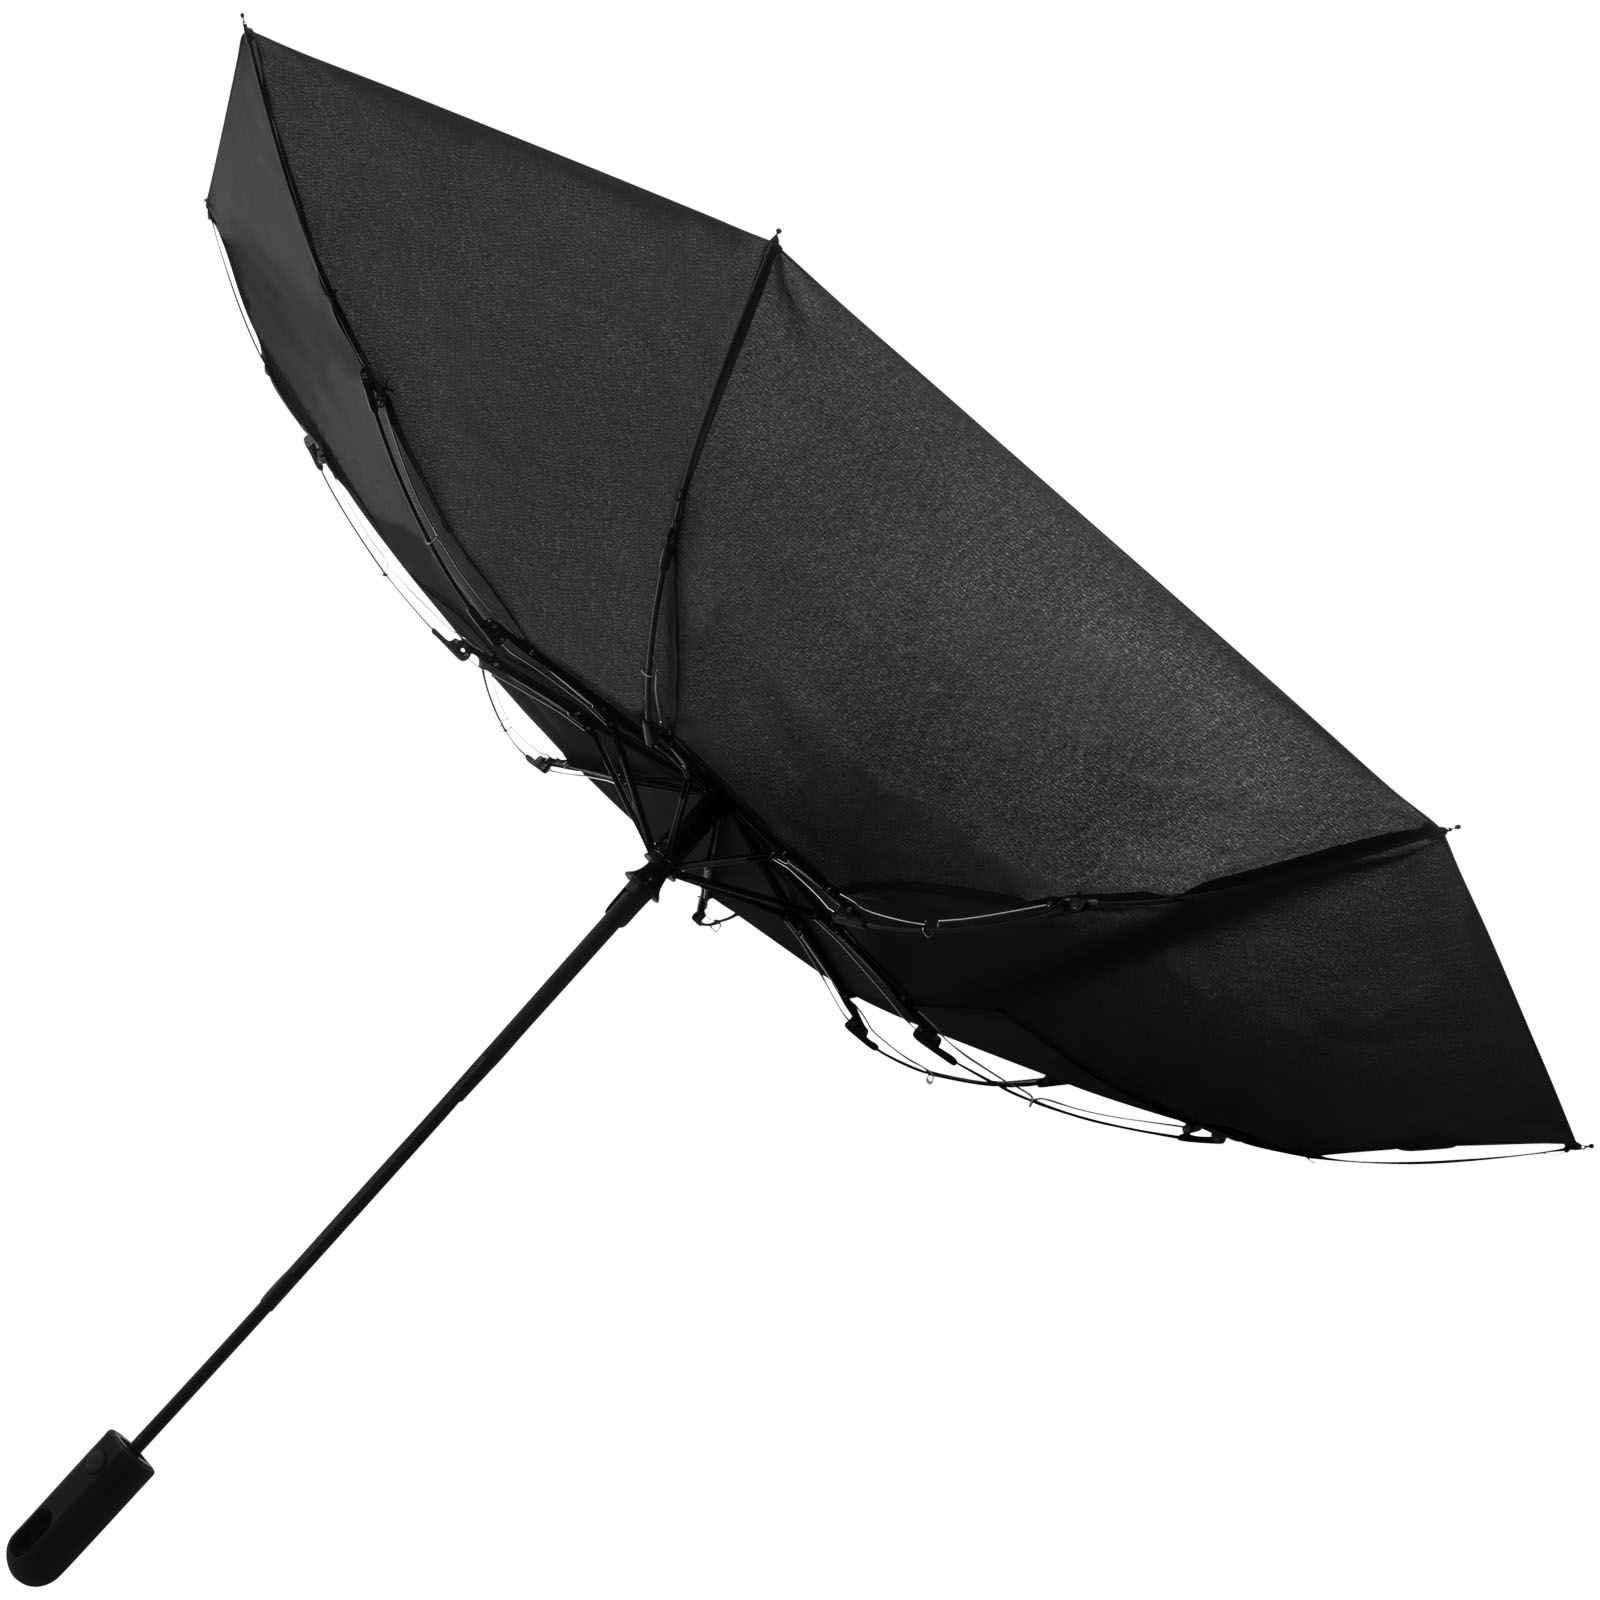 Advertising Folding Umbrellas - Trav 21.5